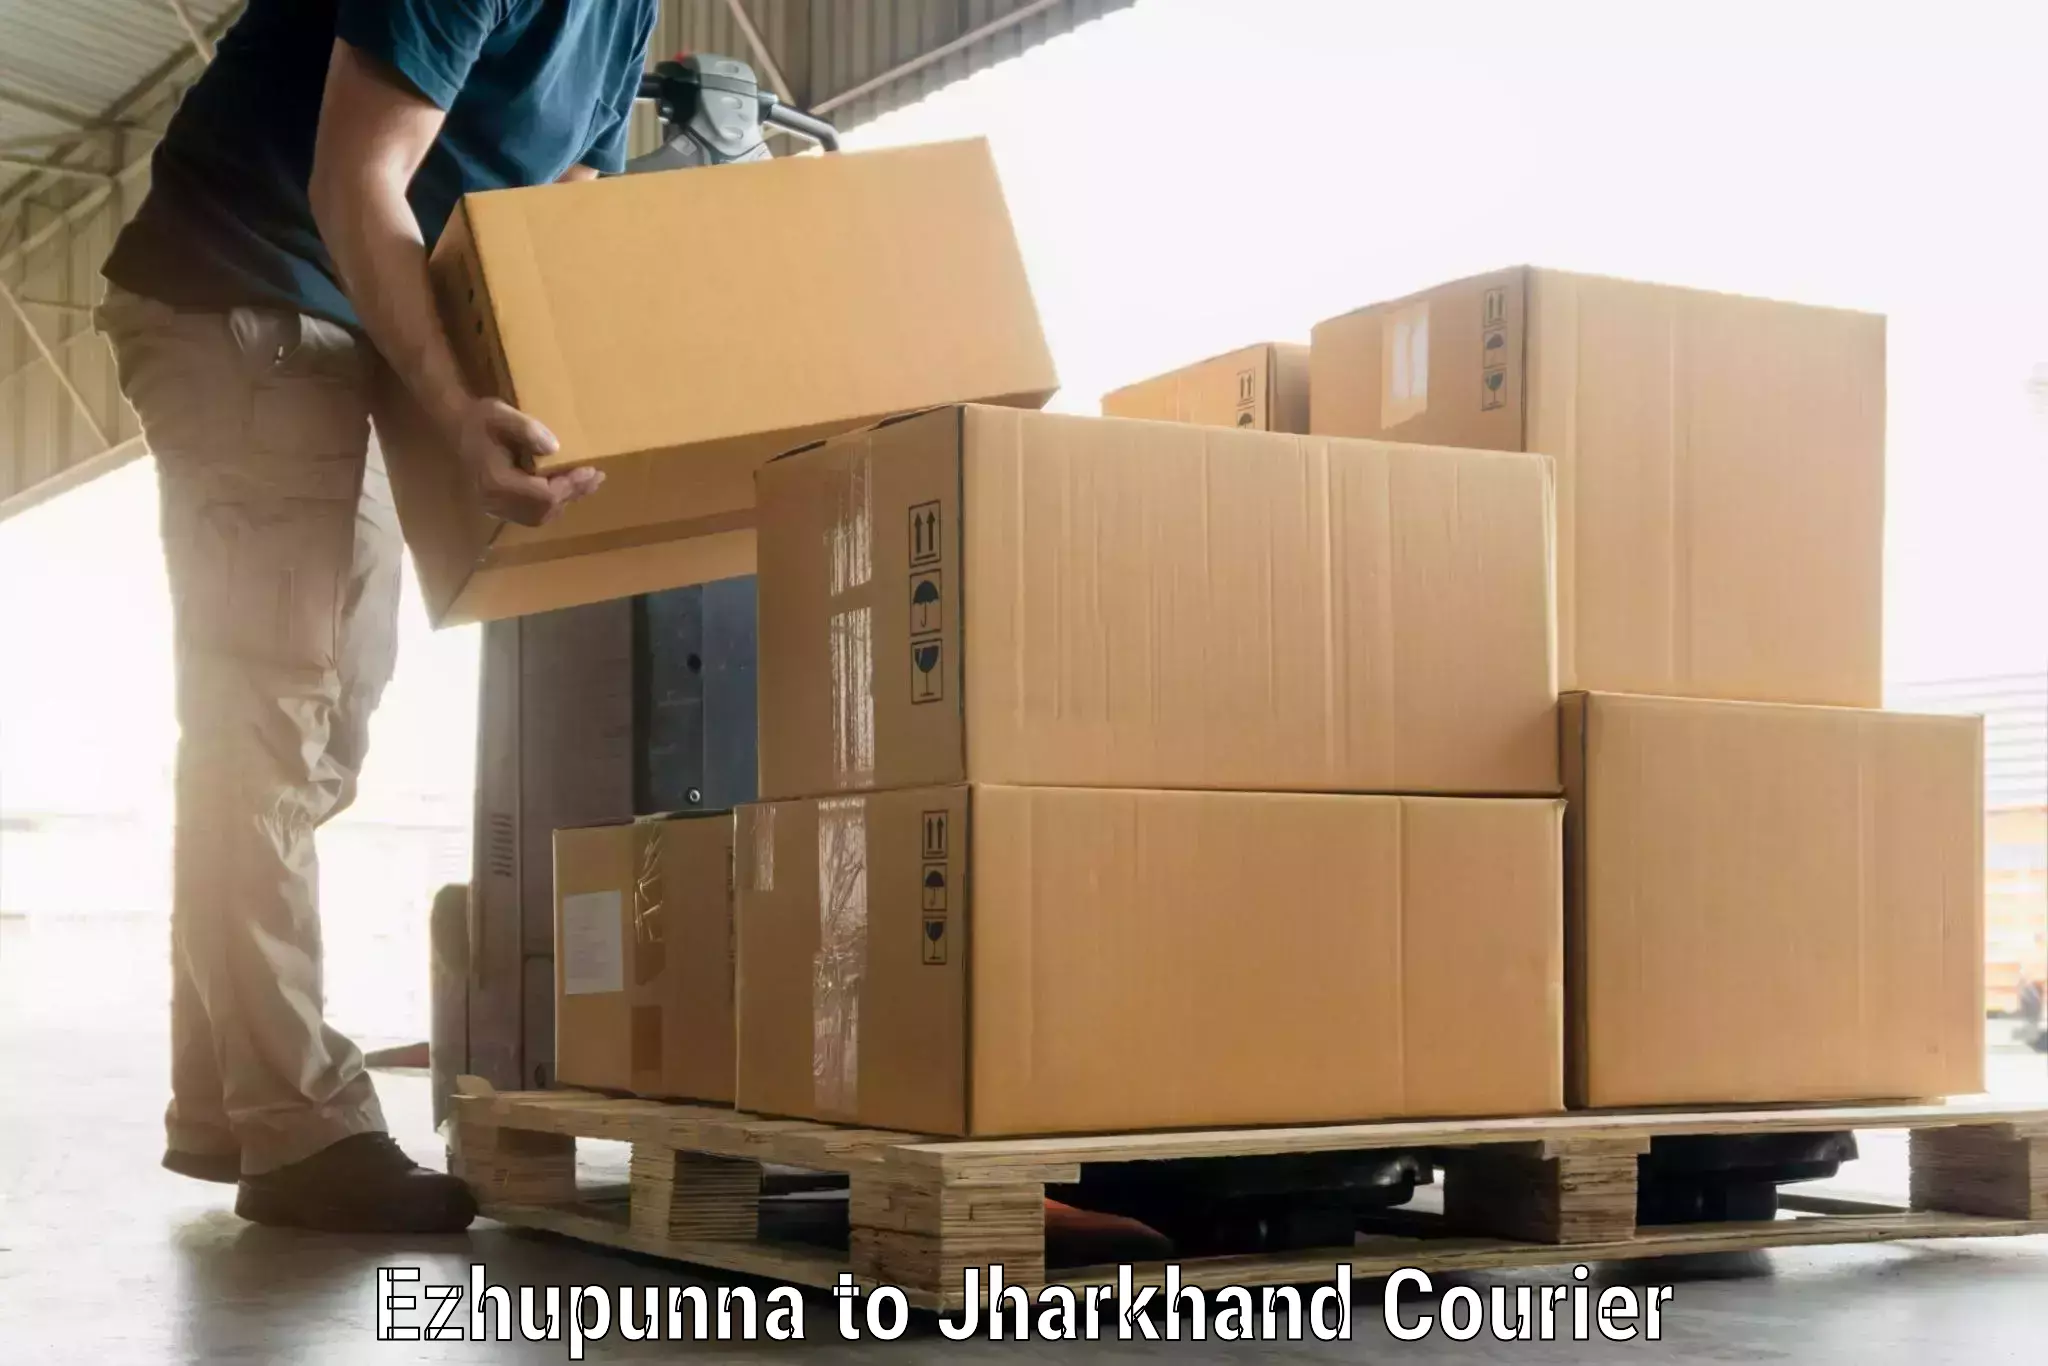 Luggage forwarding service Ezhupunna to Godabar Chatra